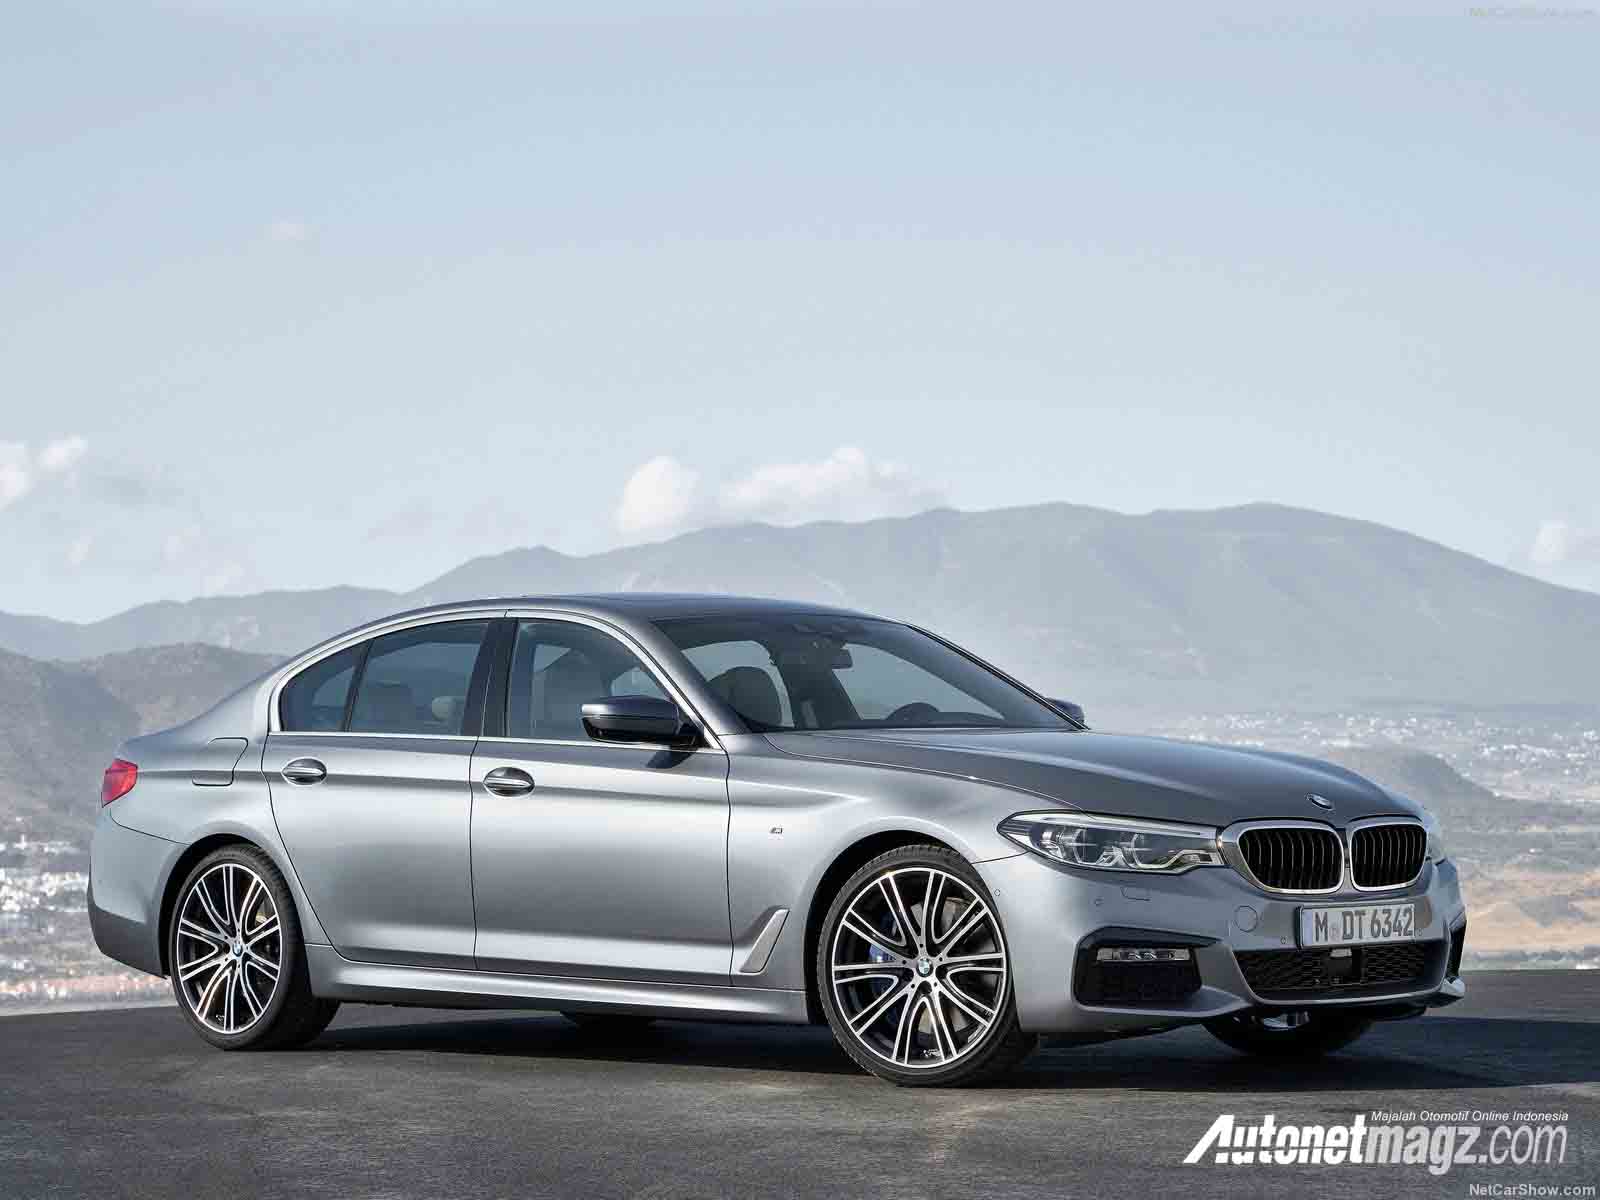 Berita, bmw seri 5 lokal depan: BMW Seri 5 Produksi Lokal Akan Meluncur Minggu Depan